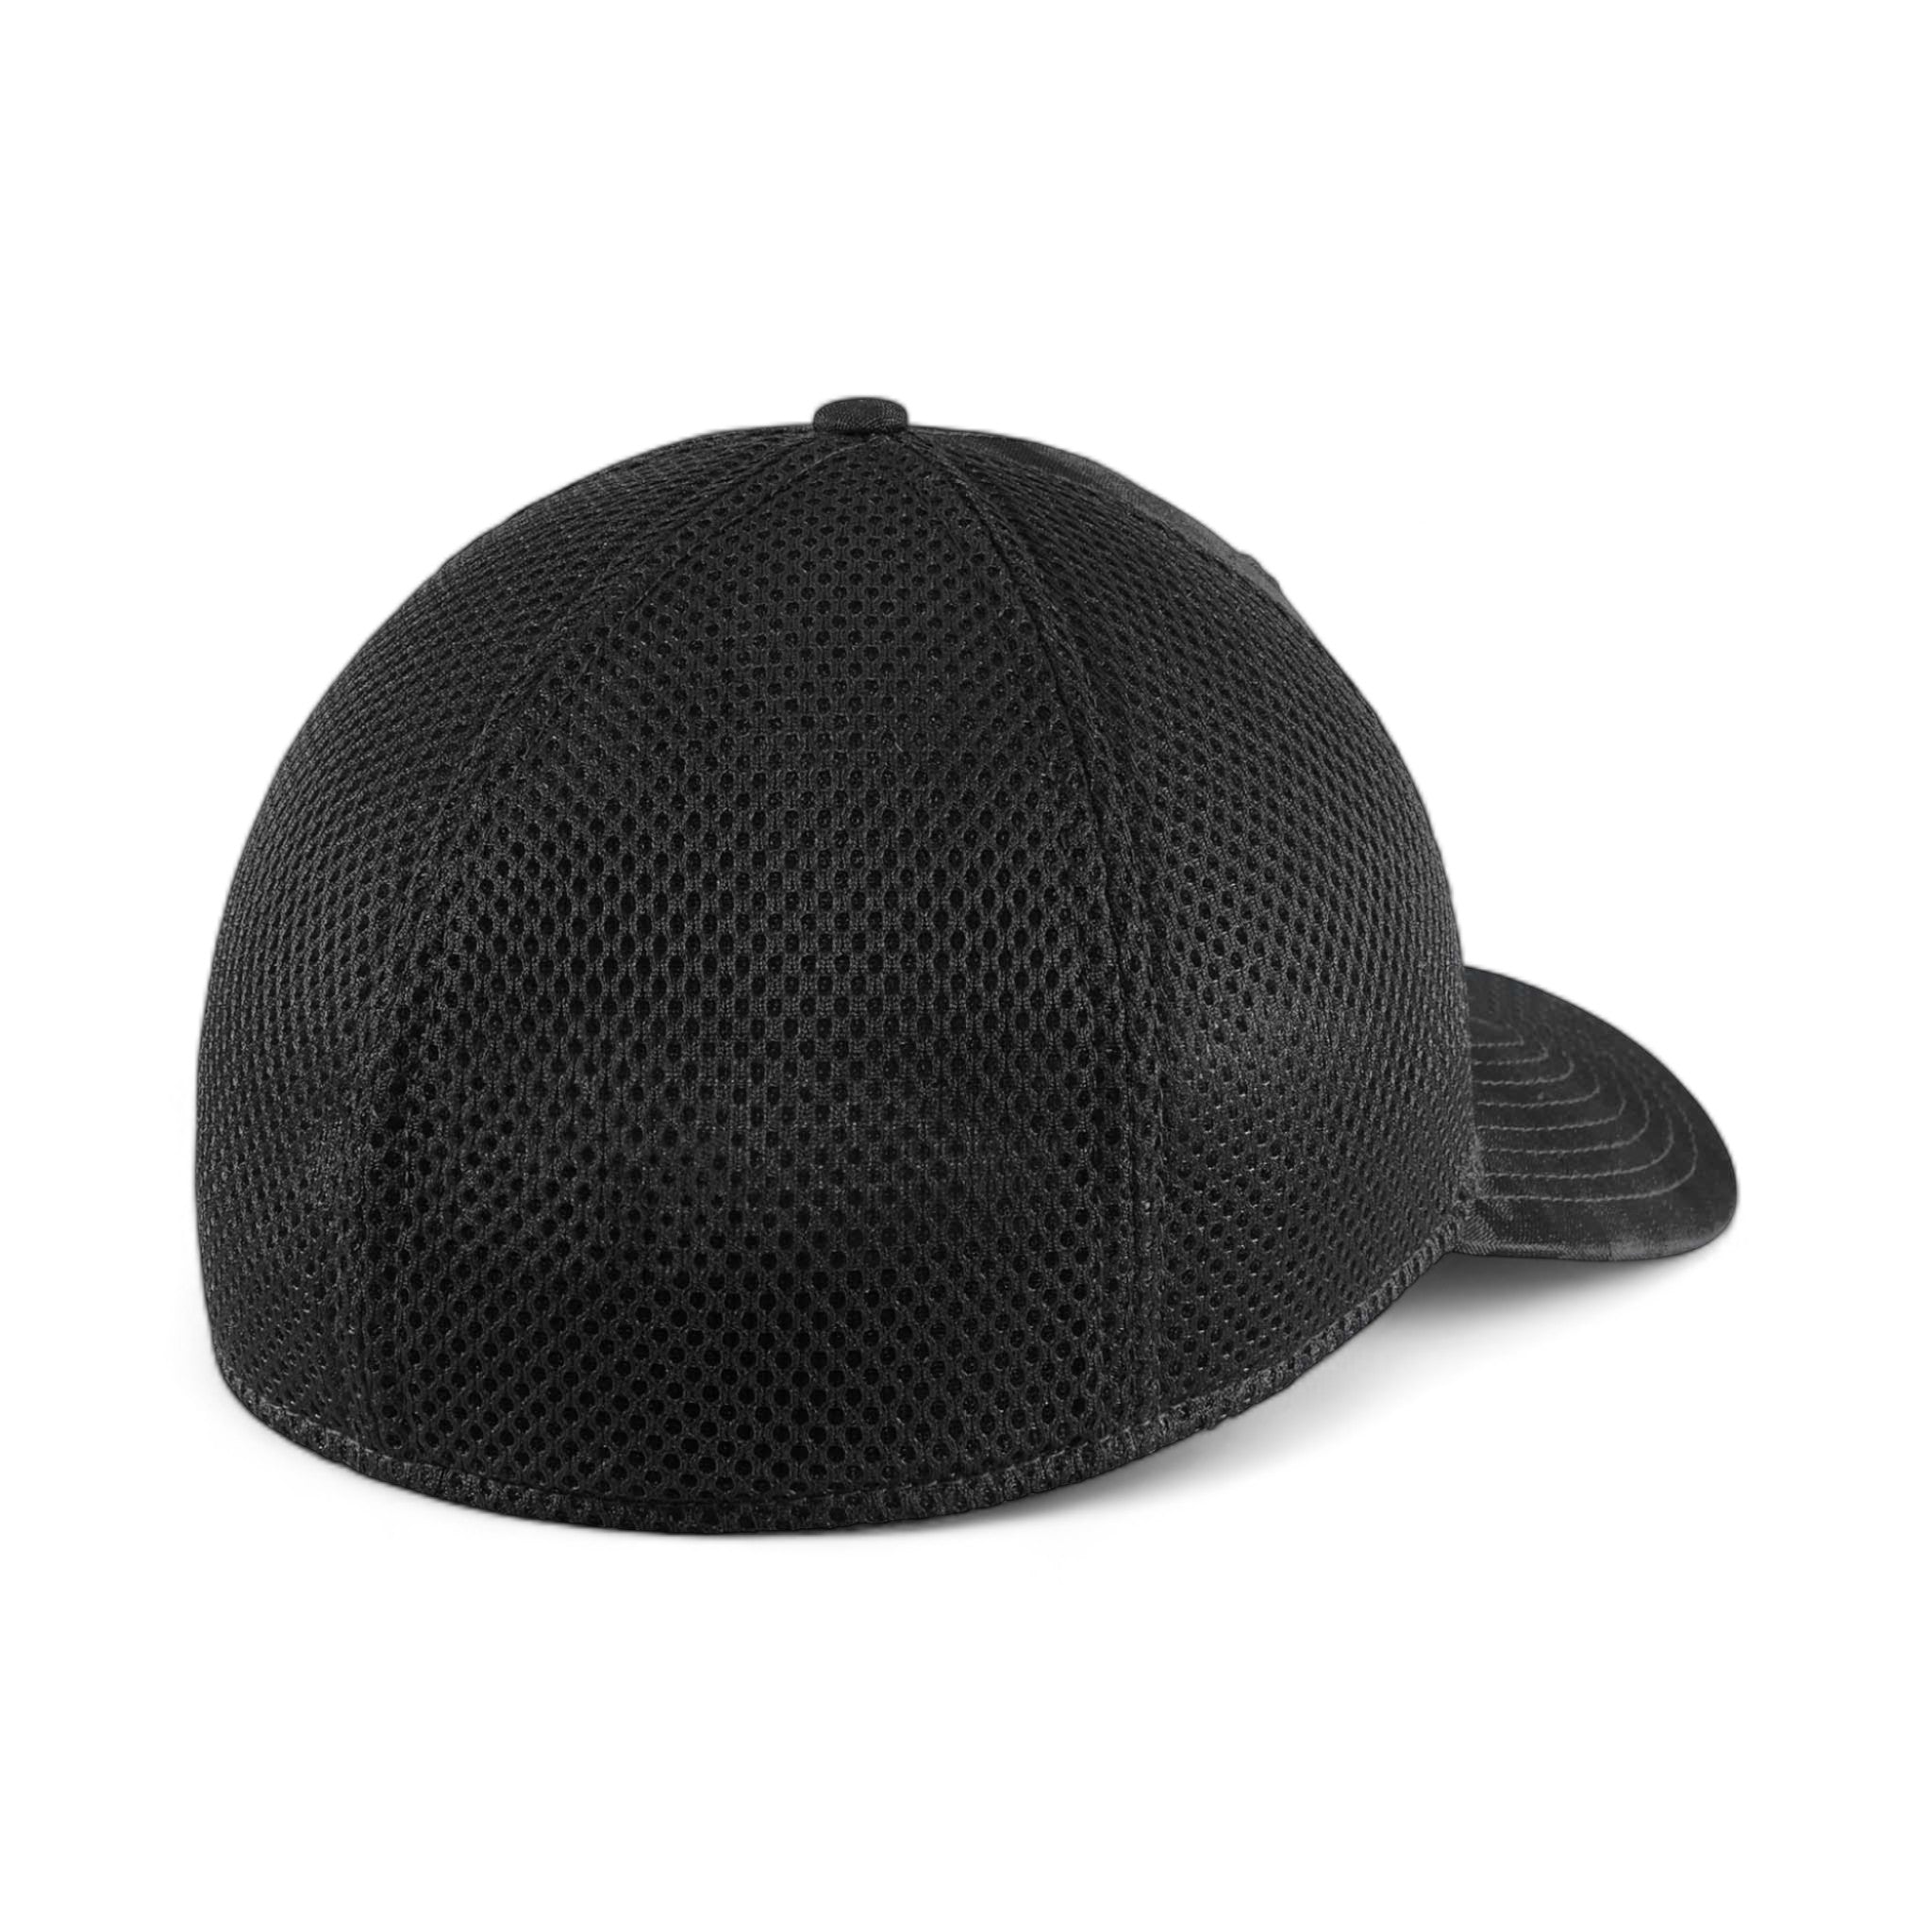 Back view of New Era NE1091 custom hat in black camo